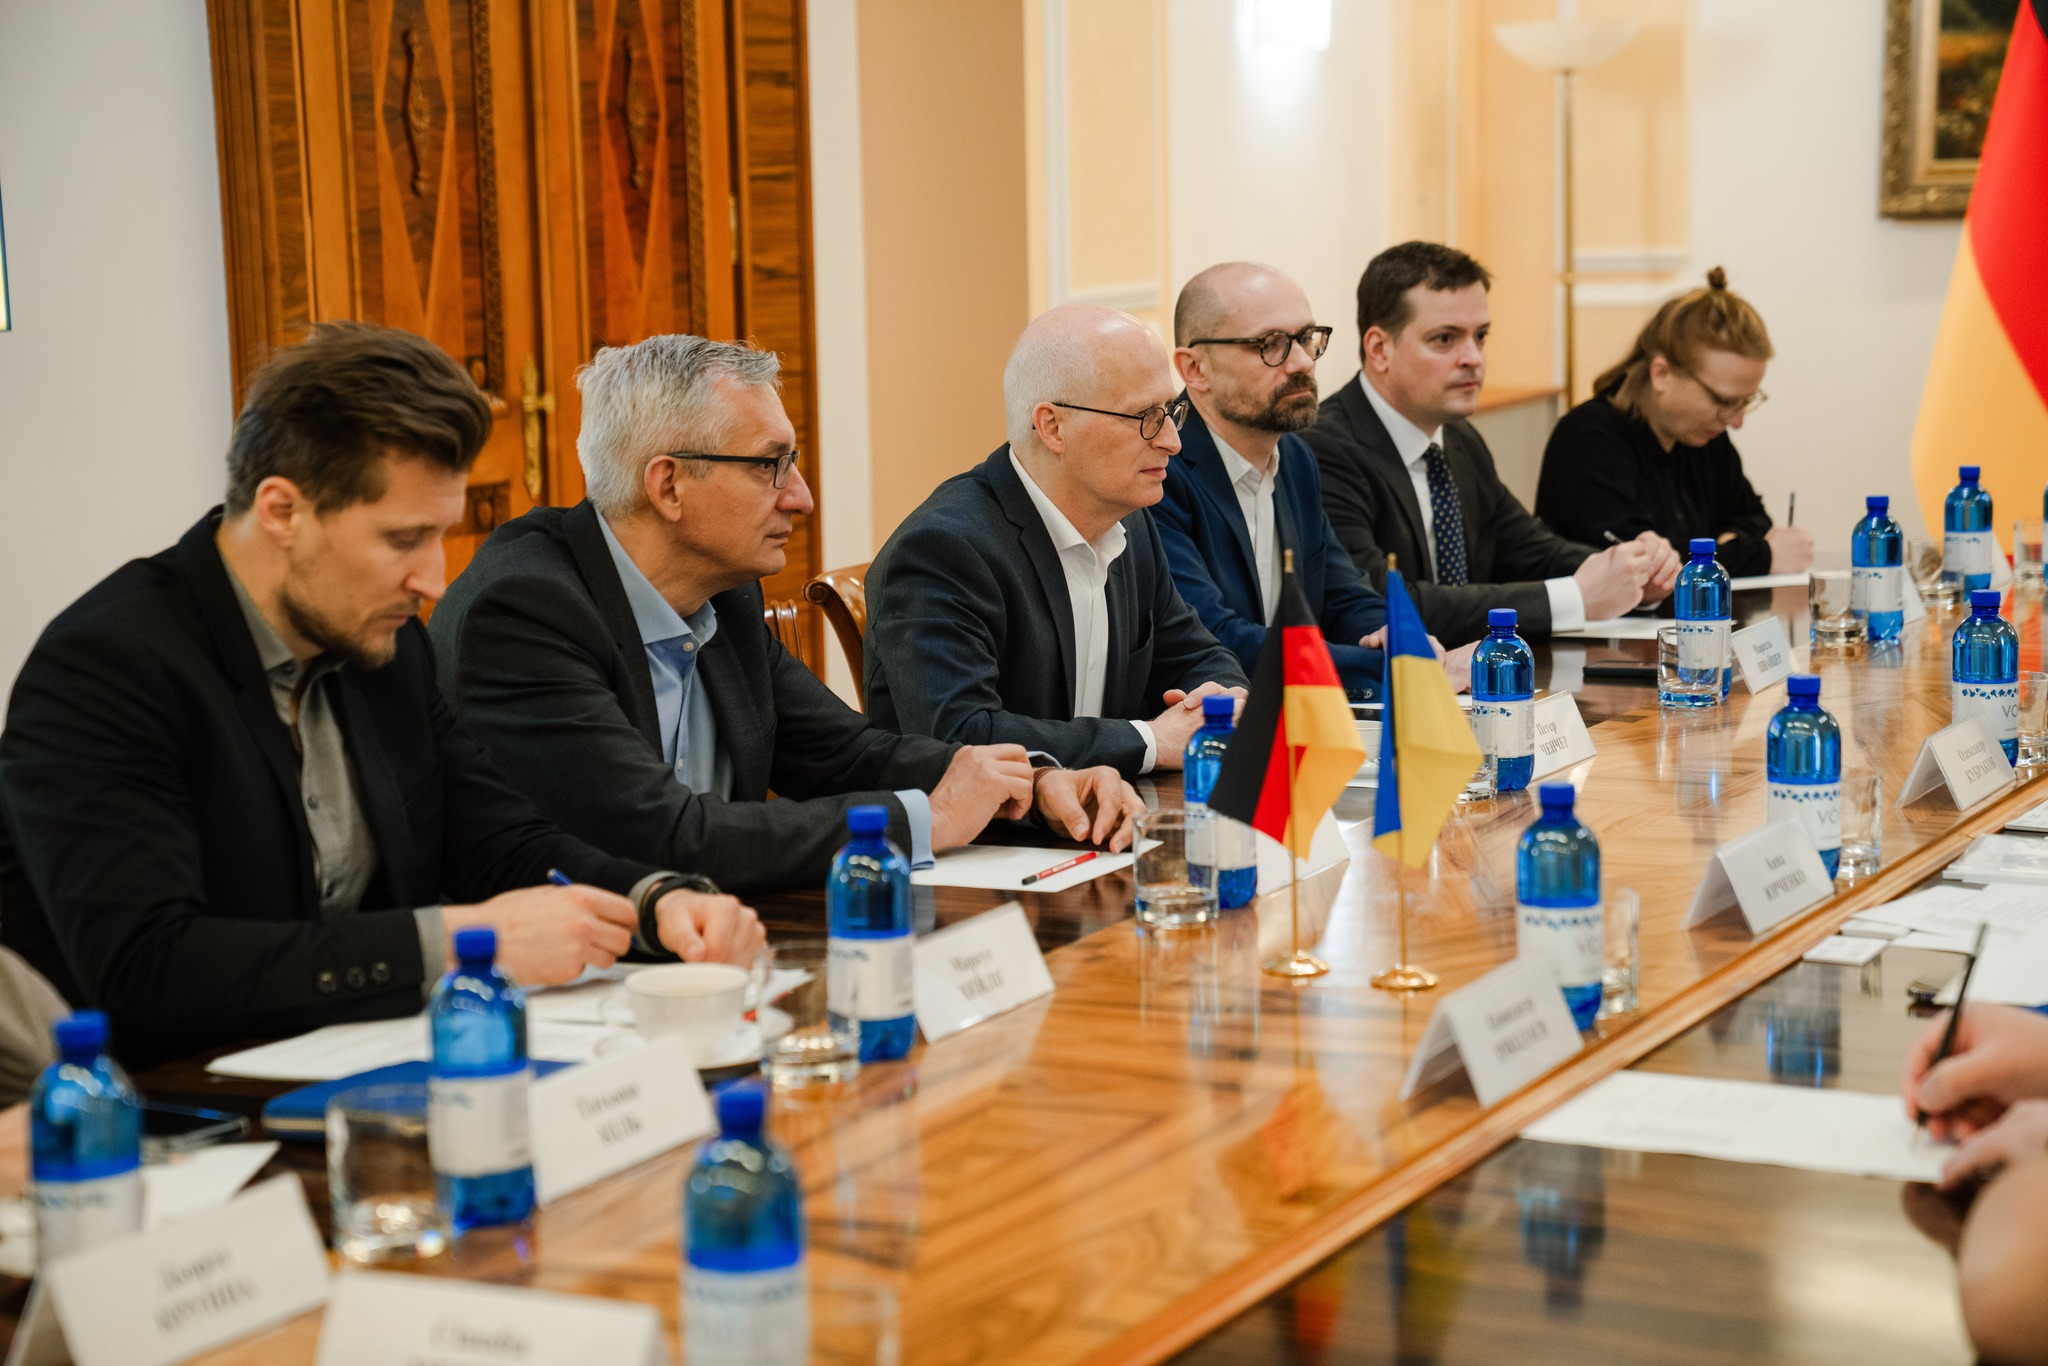 Germany and Ukraine are strengthening municipal and interregional strategic partnership